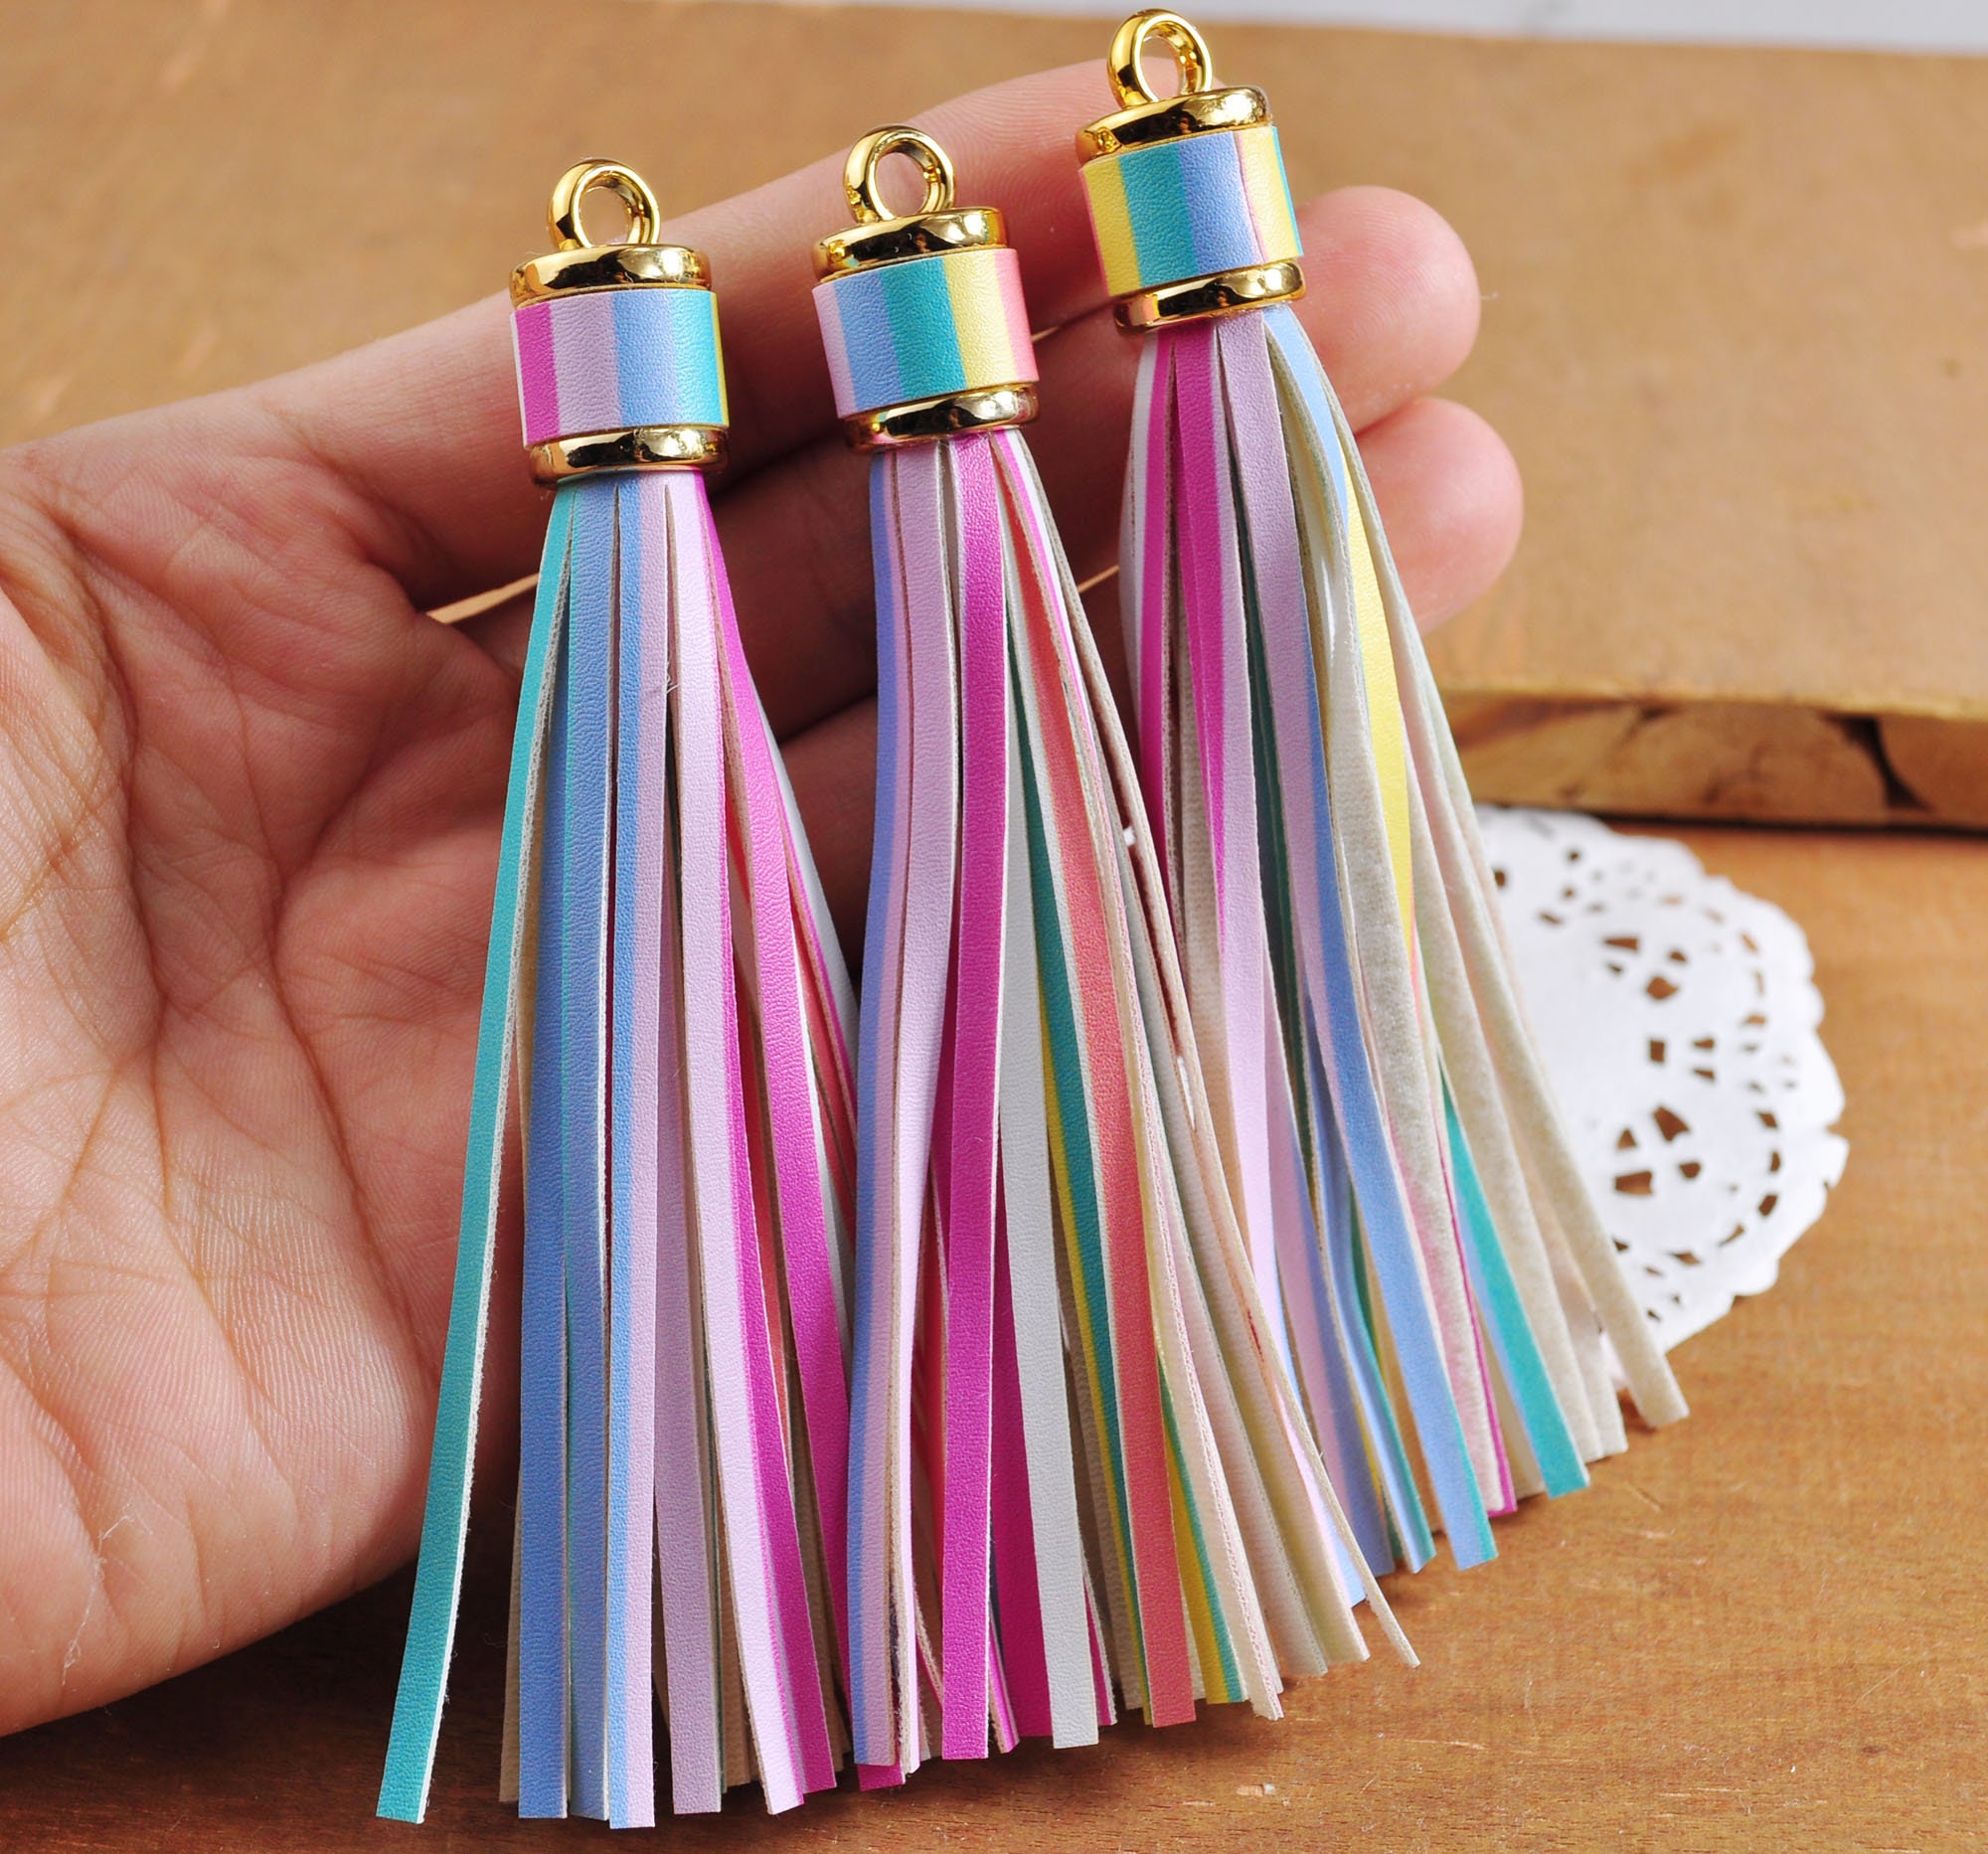 10pcs 60mm PU Tassel Fringe Tassel Leather Tassels for Handbags Keychains  Diy Jewelry Supplies 